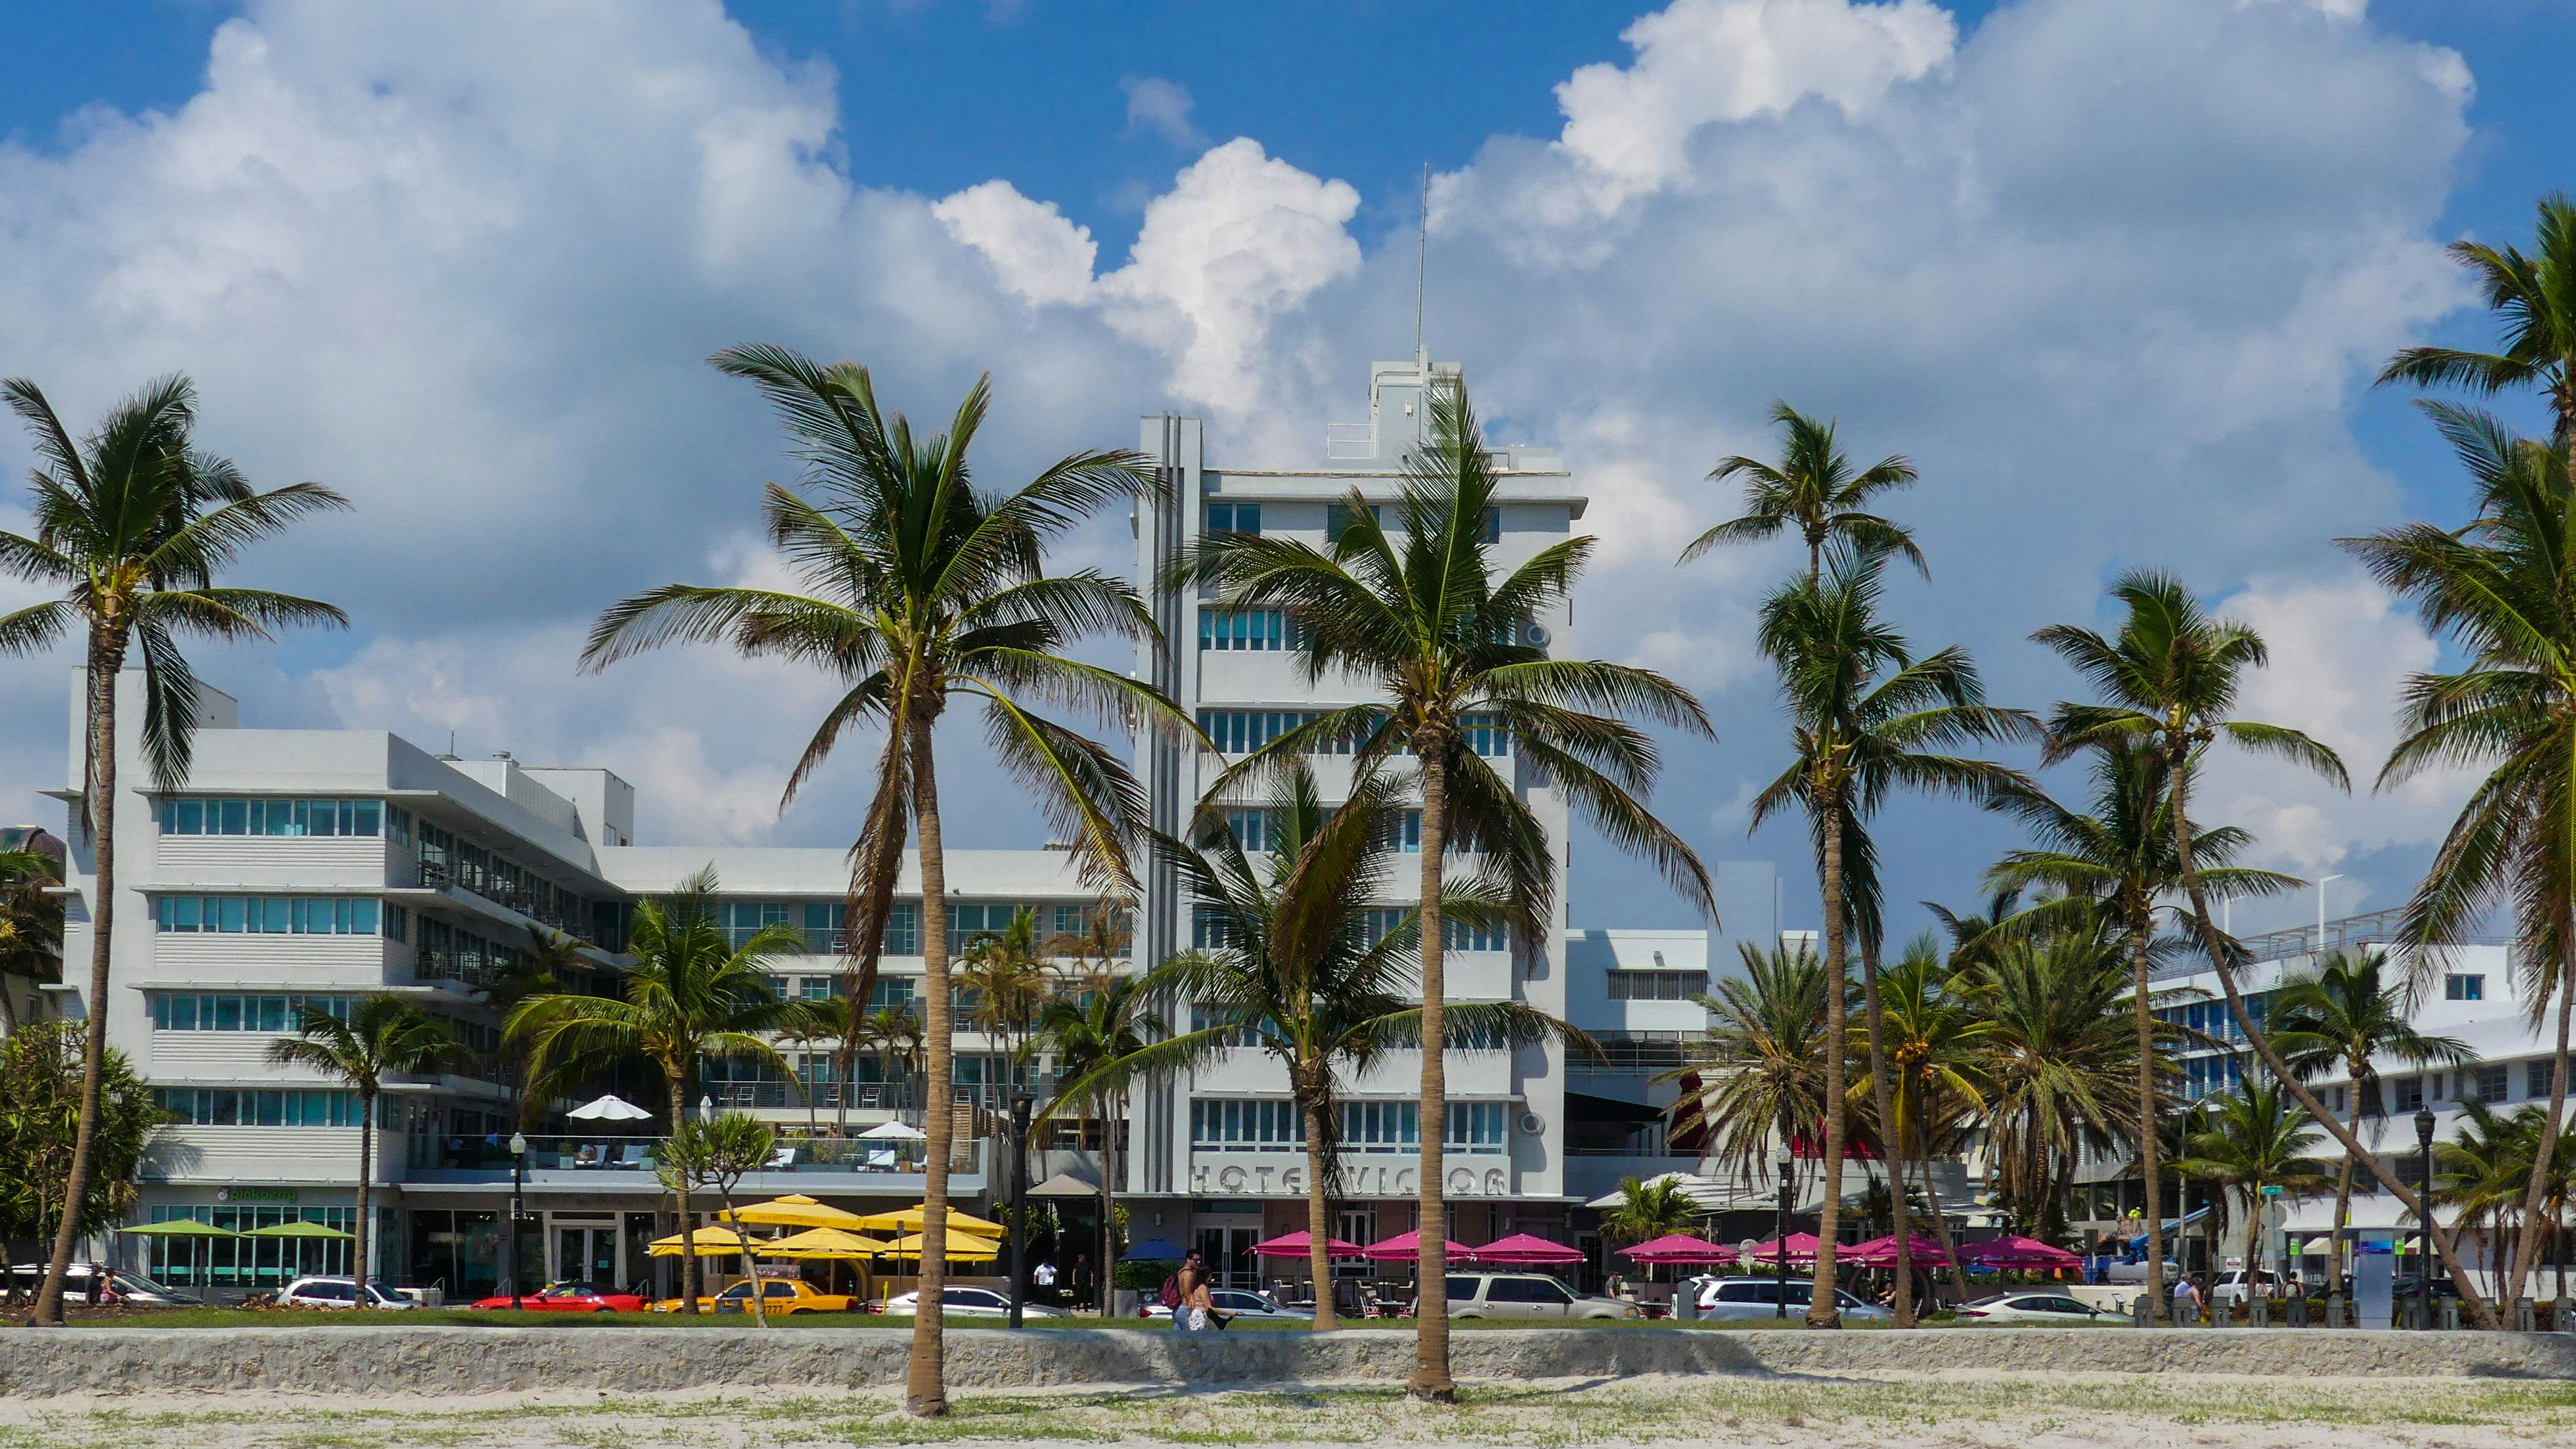 Leben unter Palmen: Florida ist nicht nur bei einheimischen Investoren beliebt. Auch viele Deutsche haben sich dort Häuser gekauft, die sie selber bewohnen und vermieten. Foto: Thomas Vorwerk